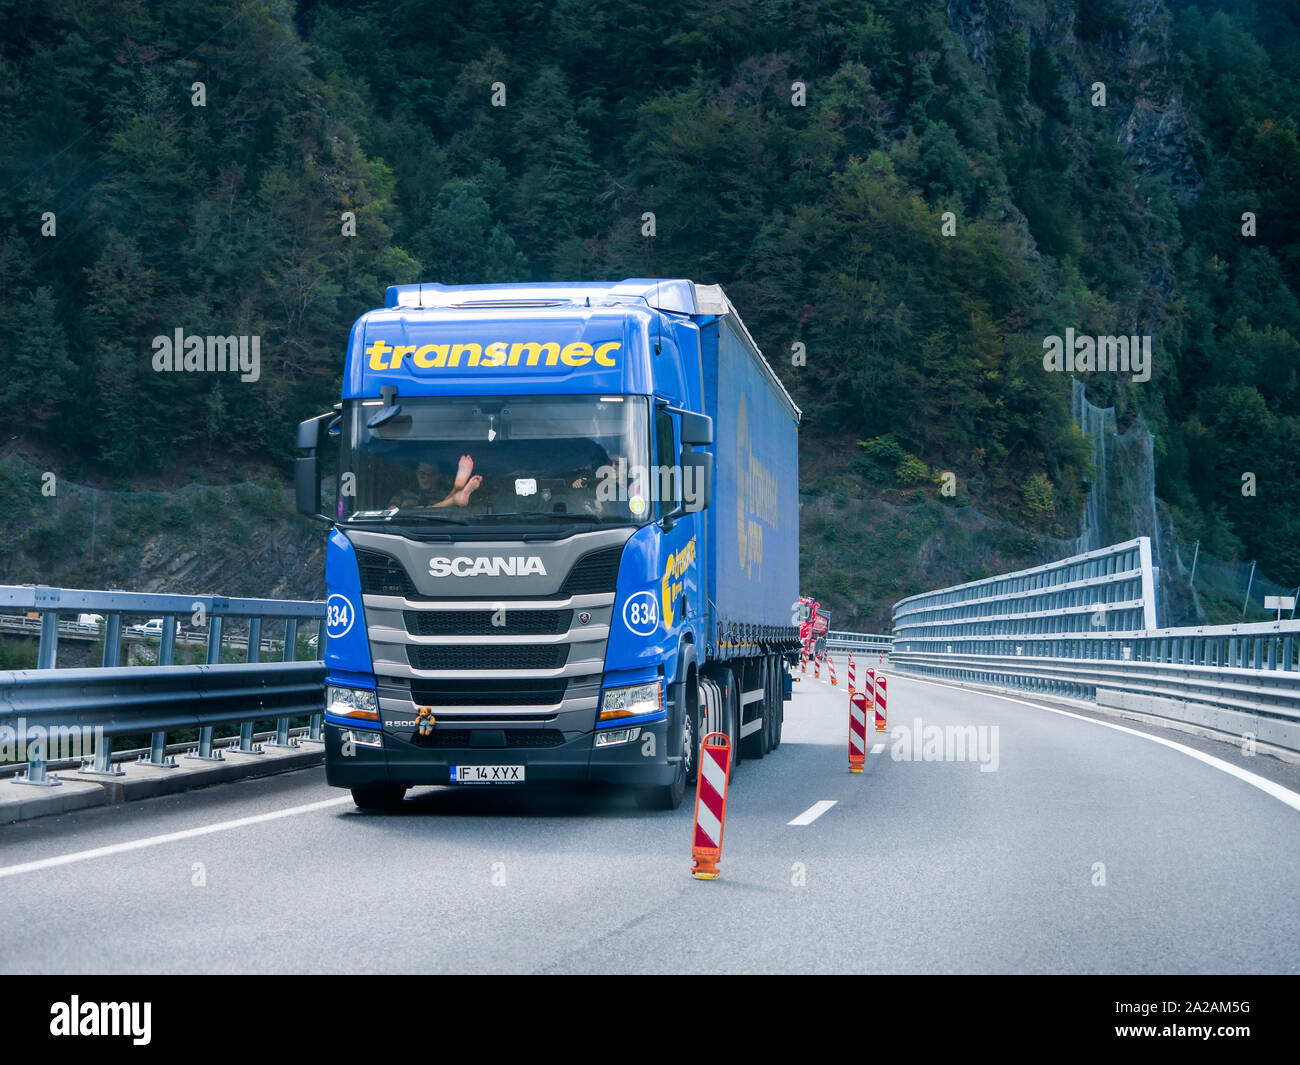 Camions de route sur le viaduc Egratz, Chamonix-Mont-Blanc, Haute-Savoie, France Banque D'Images